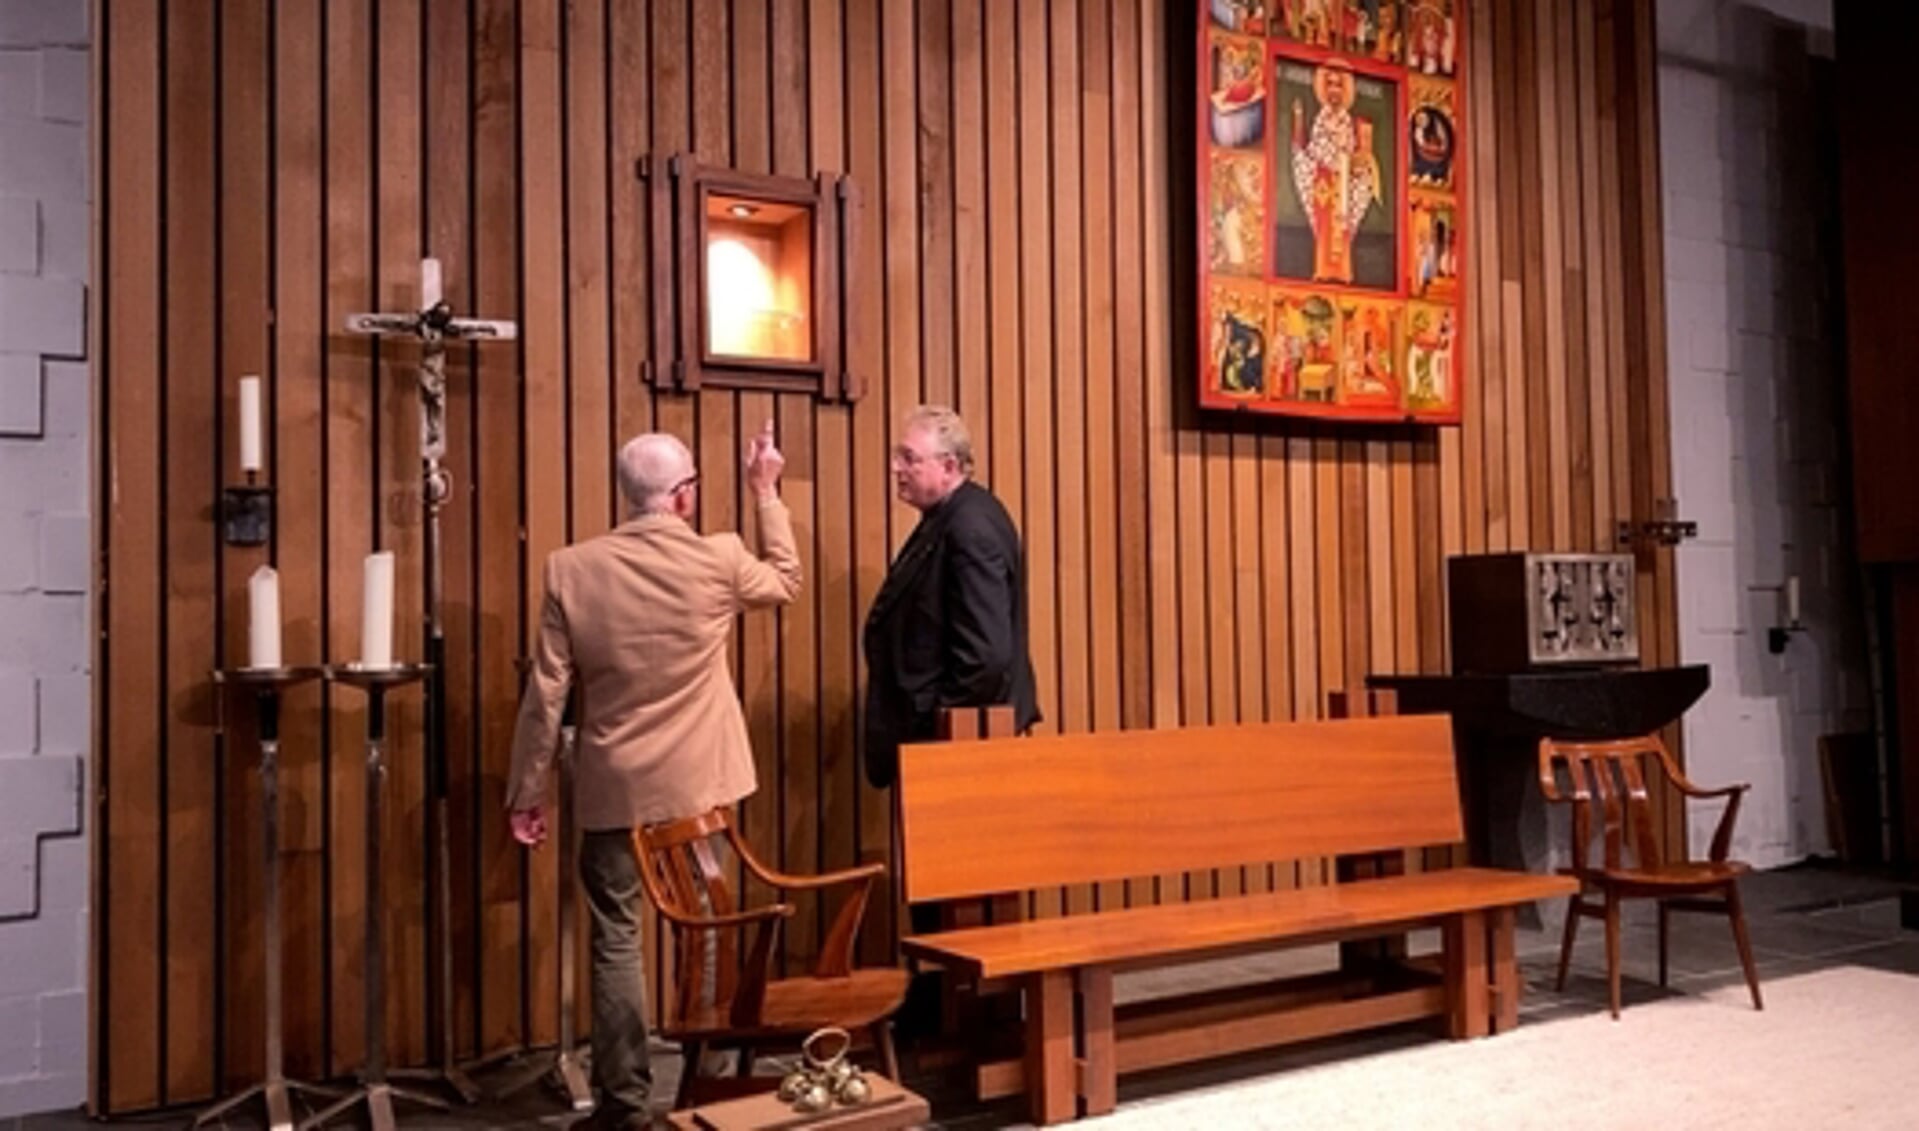 Bert Staal en pastoor Hogenelst bij het kastje waarin het reliek binnenkort geplaatst wordt.